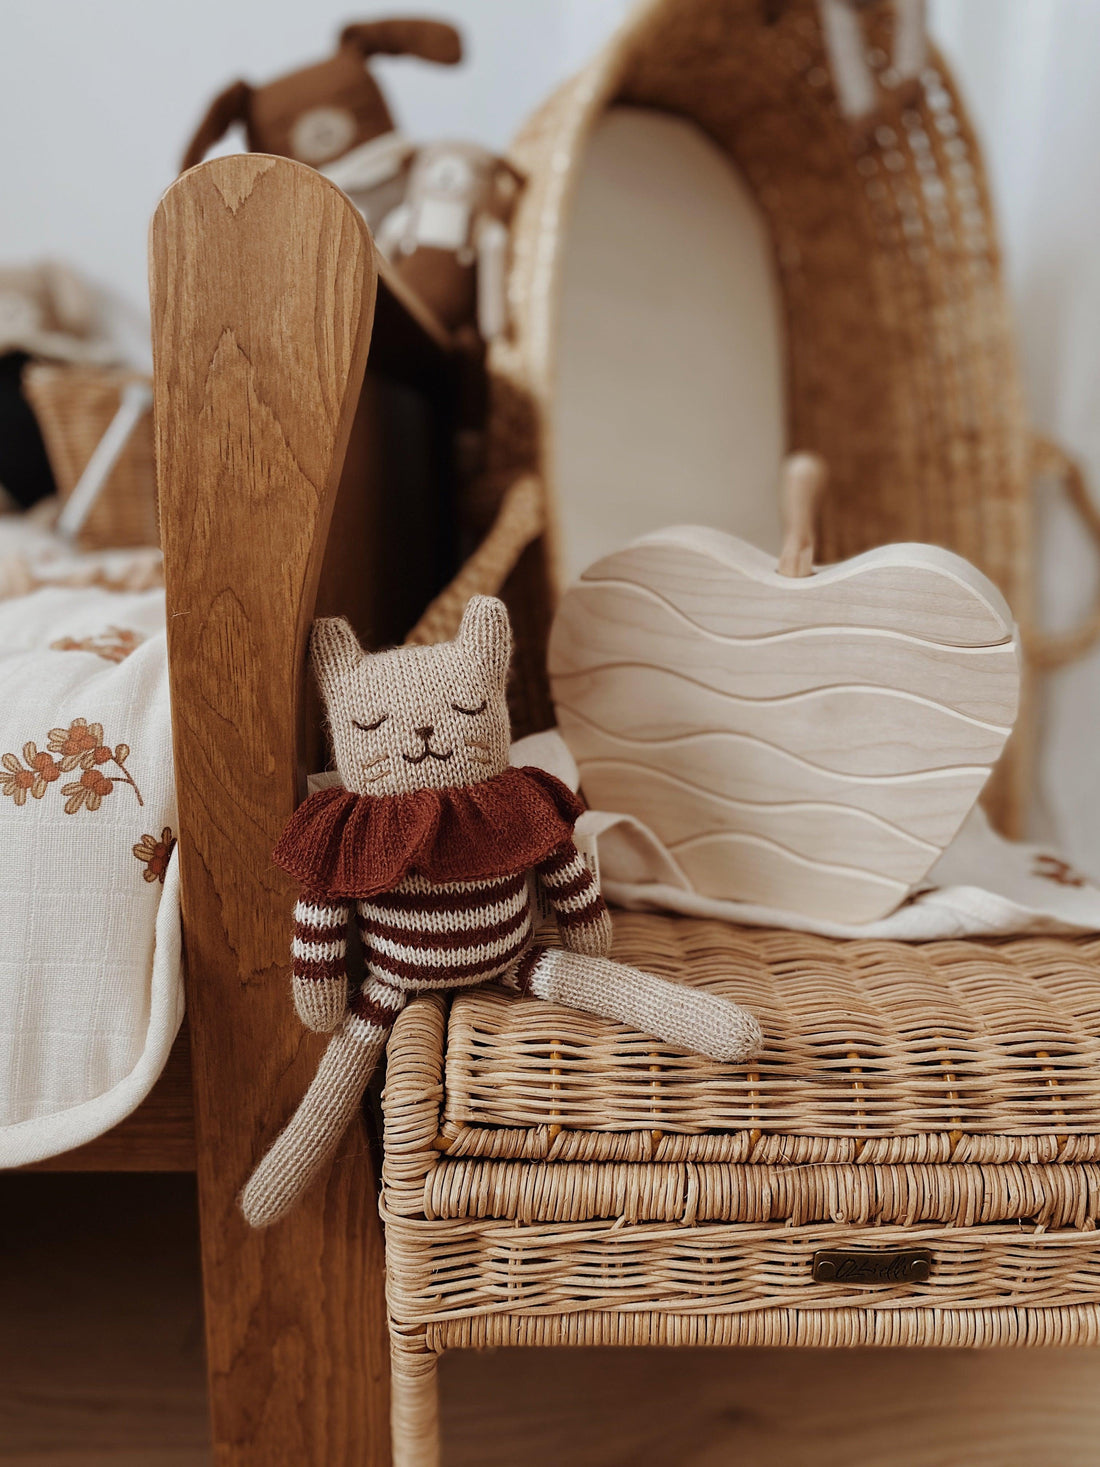 Main Sauvage Knitted Kitten Soft Toy, Sienna Striped Romper - Hello Little Birdie